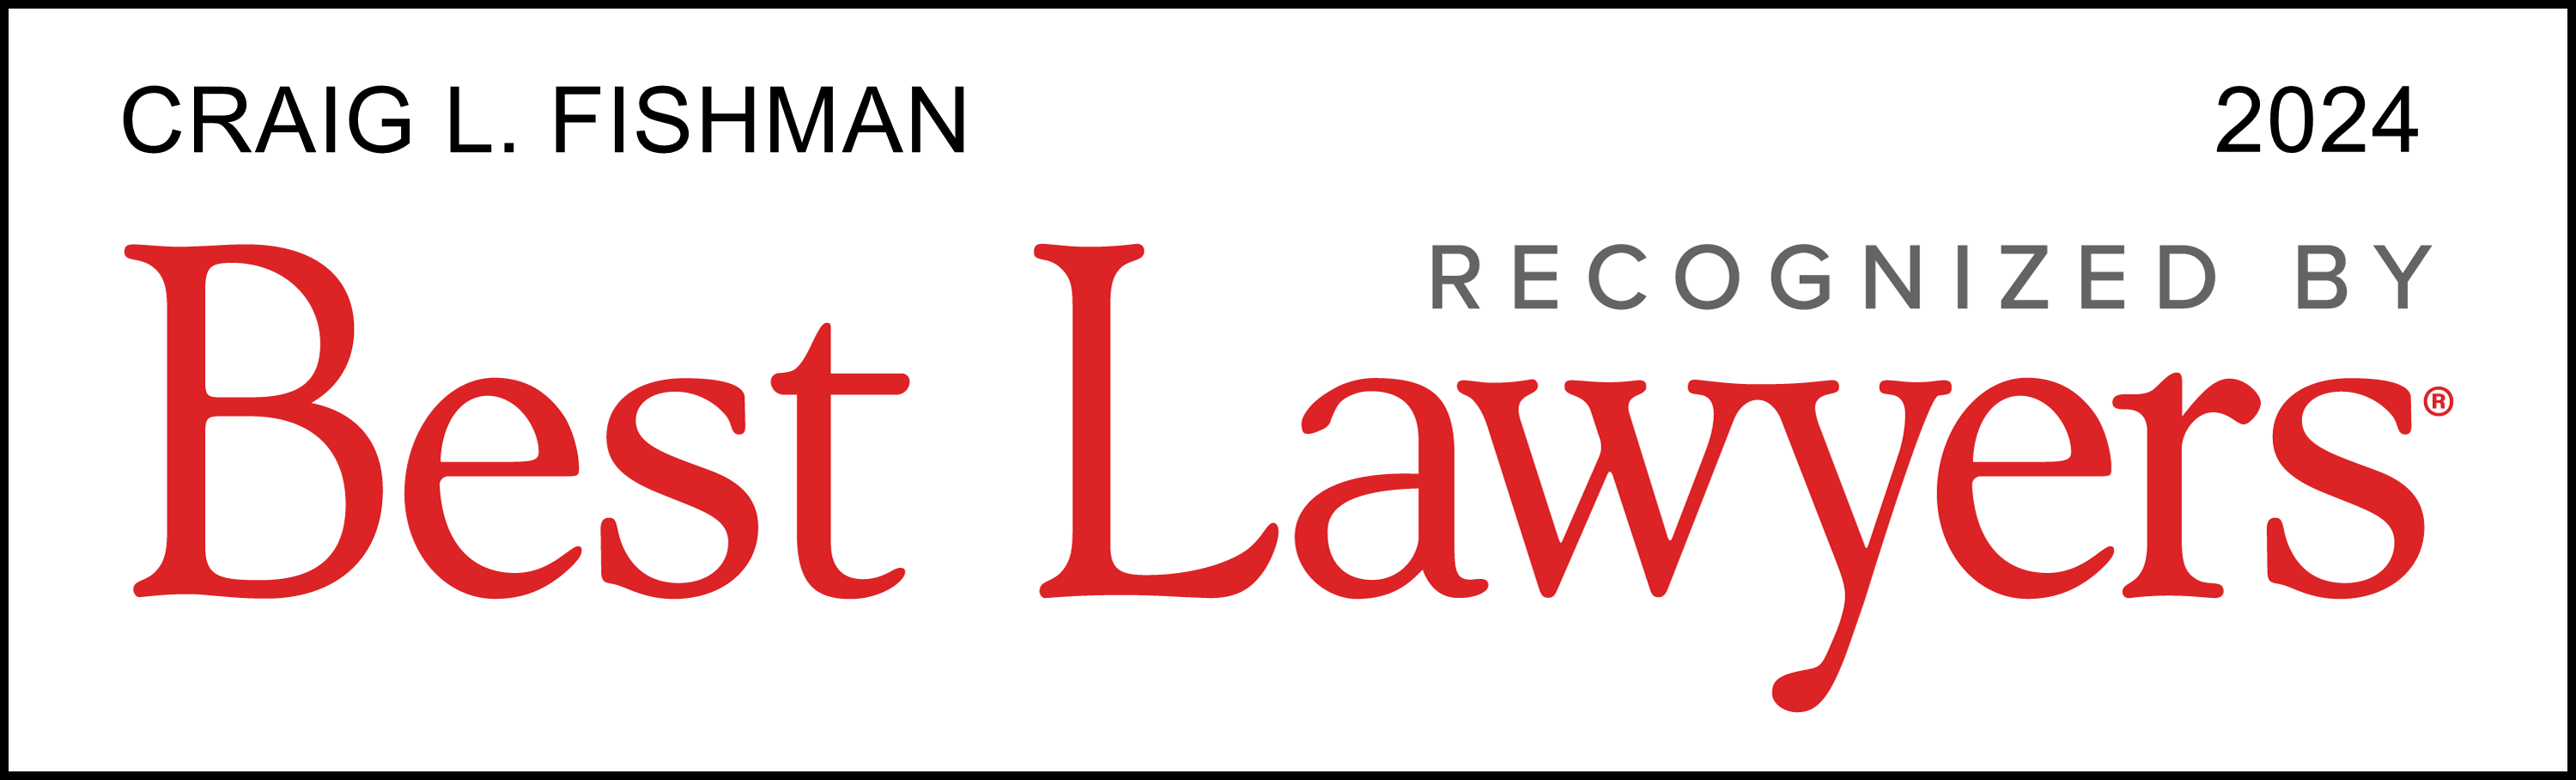 Best-Lawyers-Lawyer-Logo-2022 (1)